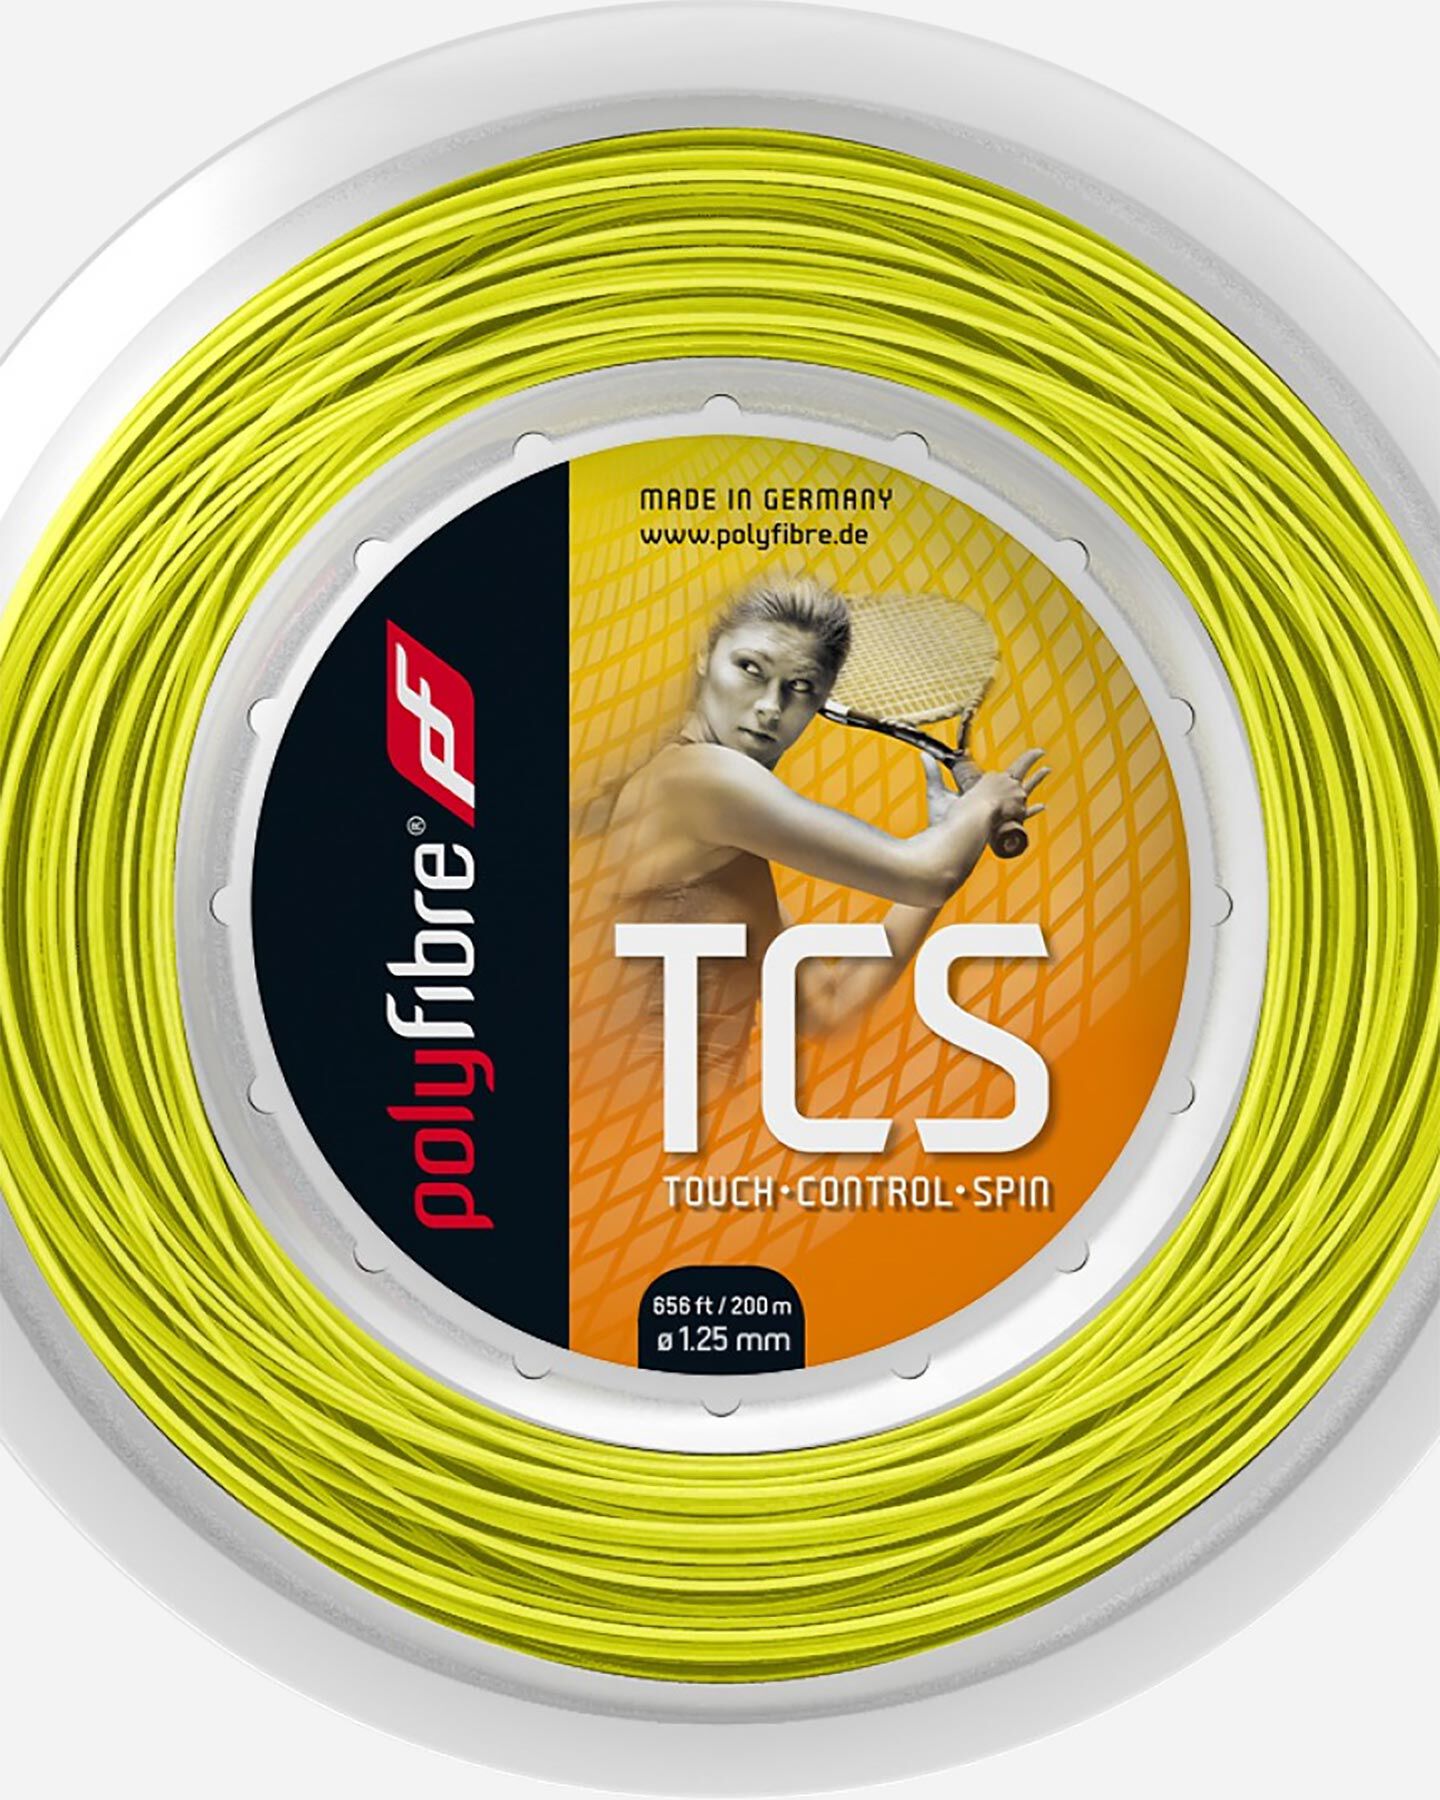  Corde tennis POLYFIBRE TCS 200M S4095909|UNI|UNI scatto 1